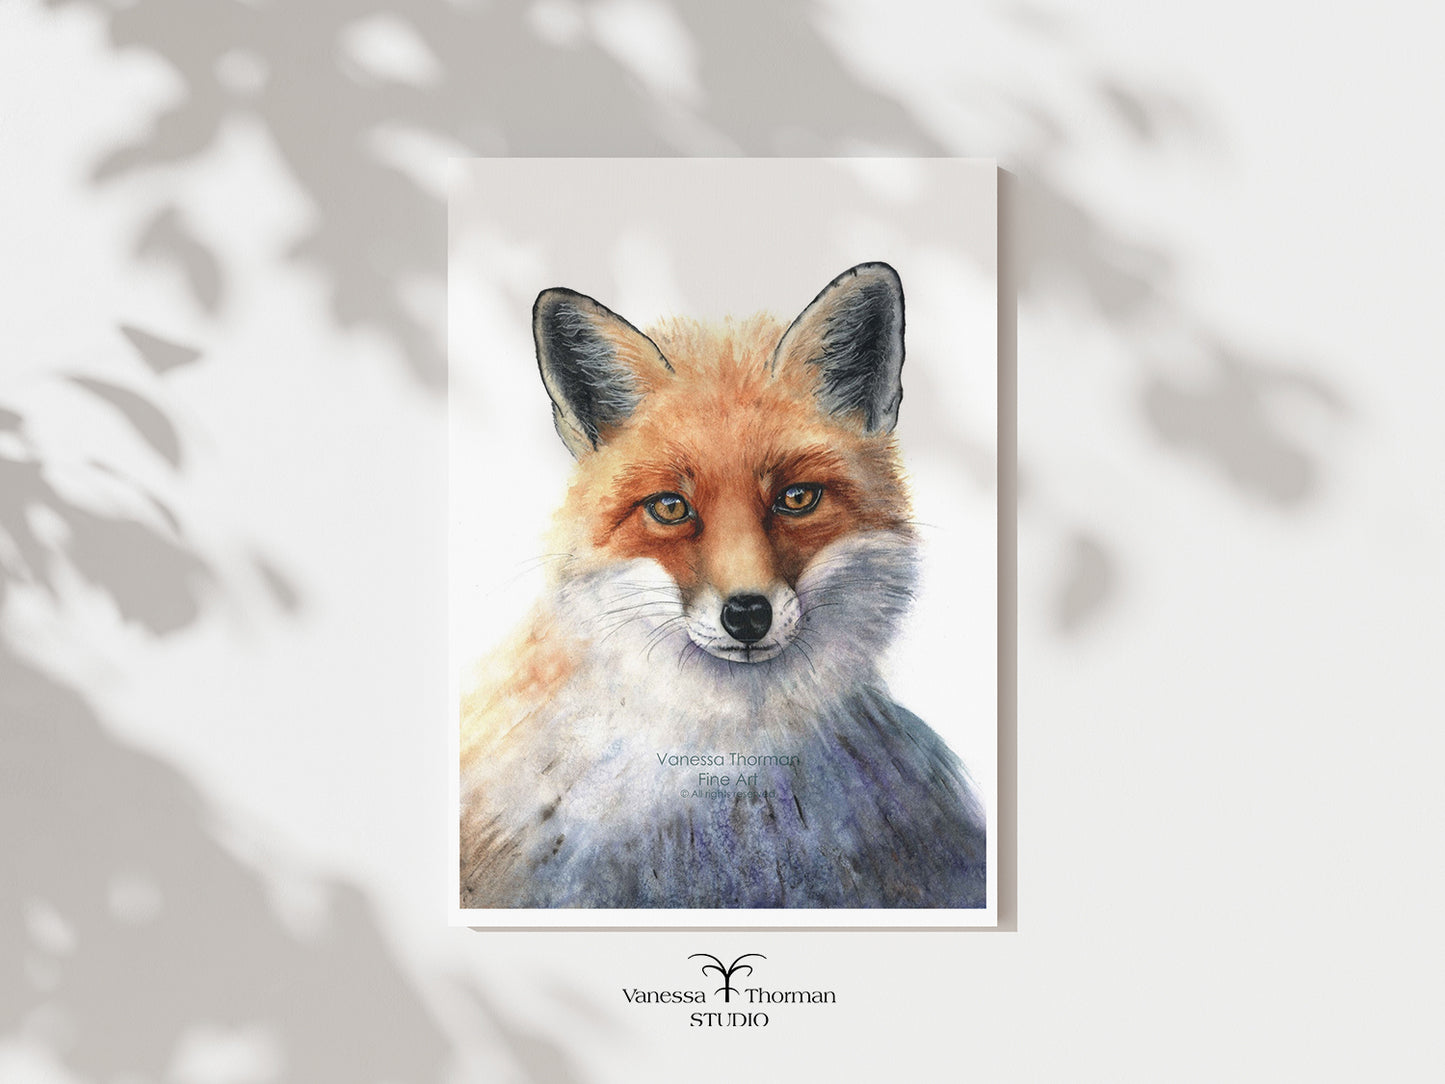 Italian Fox - Fine Art Print